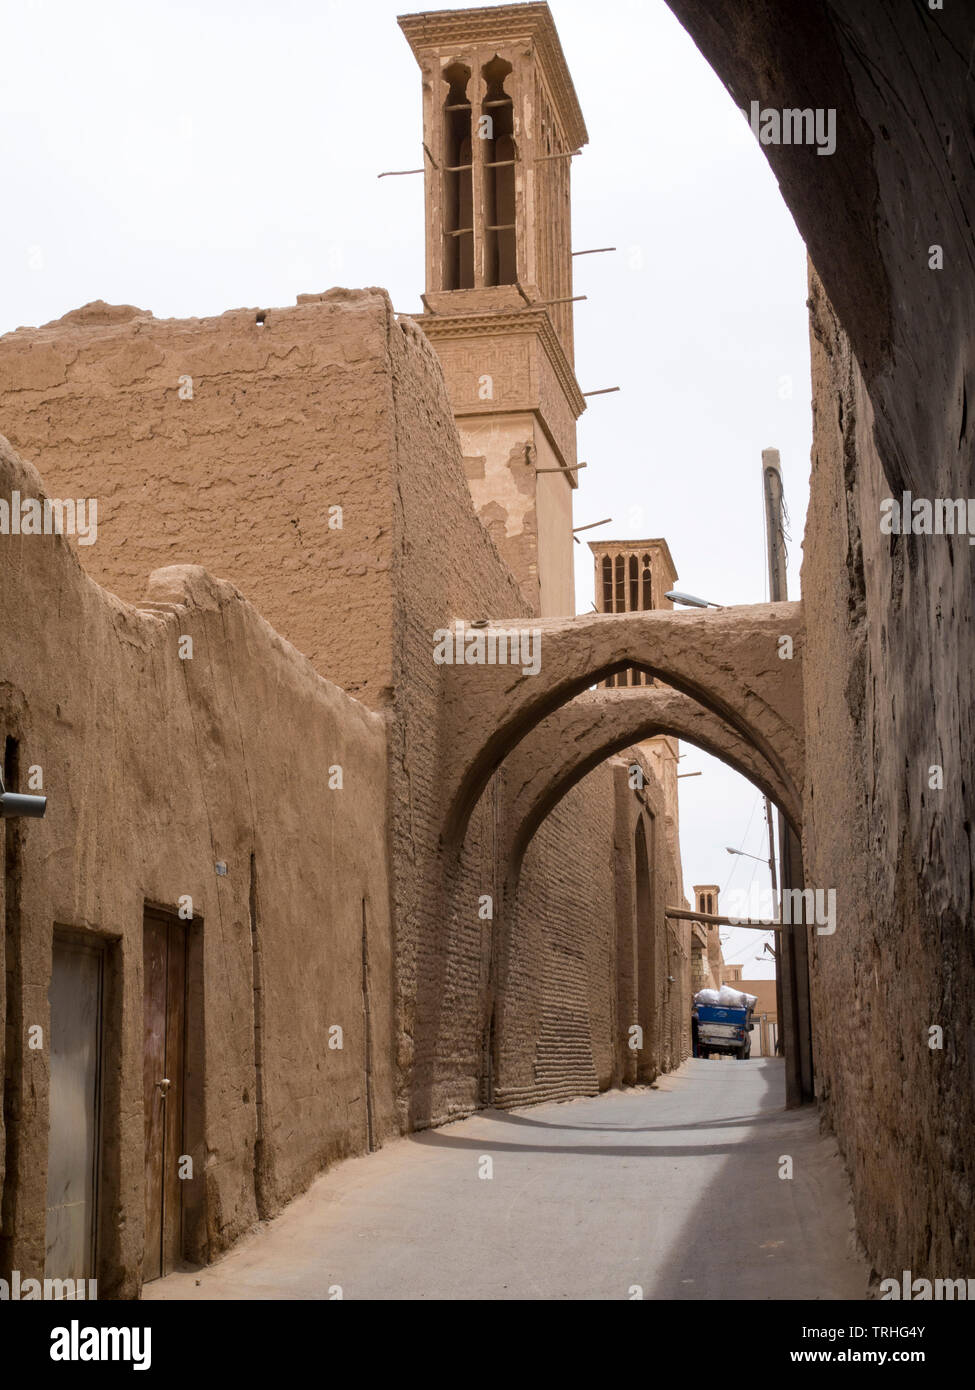 Eine alte alte Erde gerammt Straße in der Altstadt von Yazd, ein beliebtes Touristenziel und Zoroastrier, die Sie während des Iran Sassanid ära, im Iran. Stockfoto